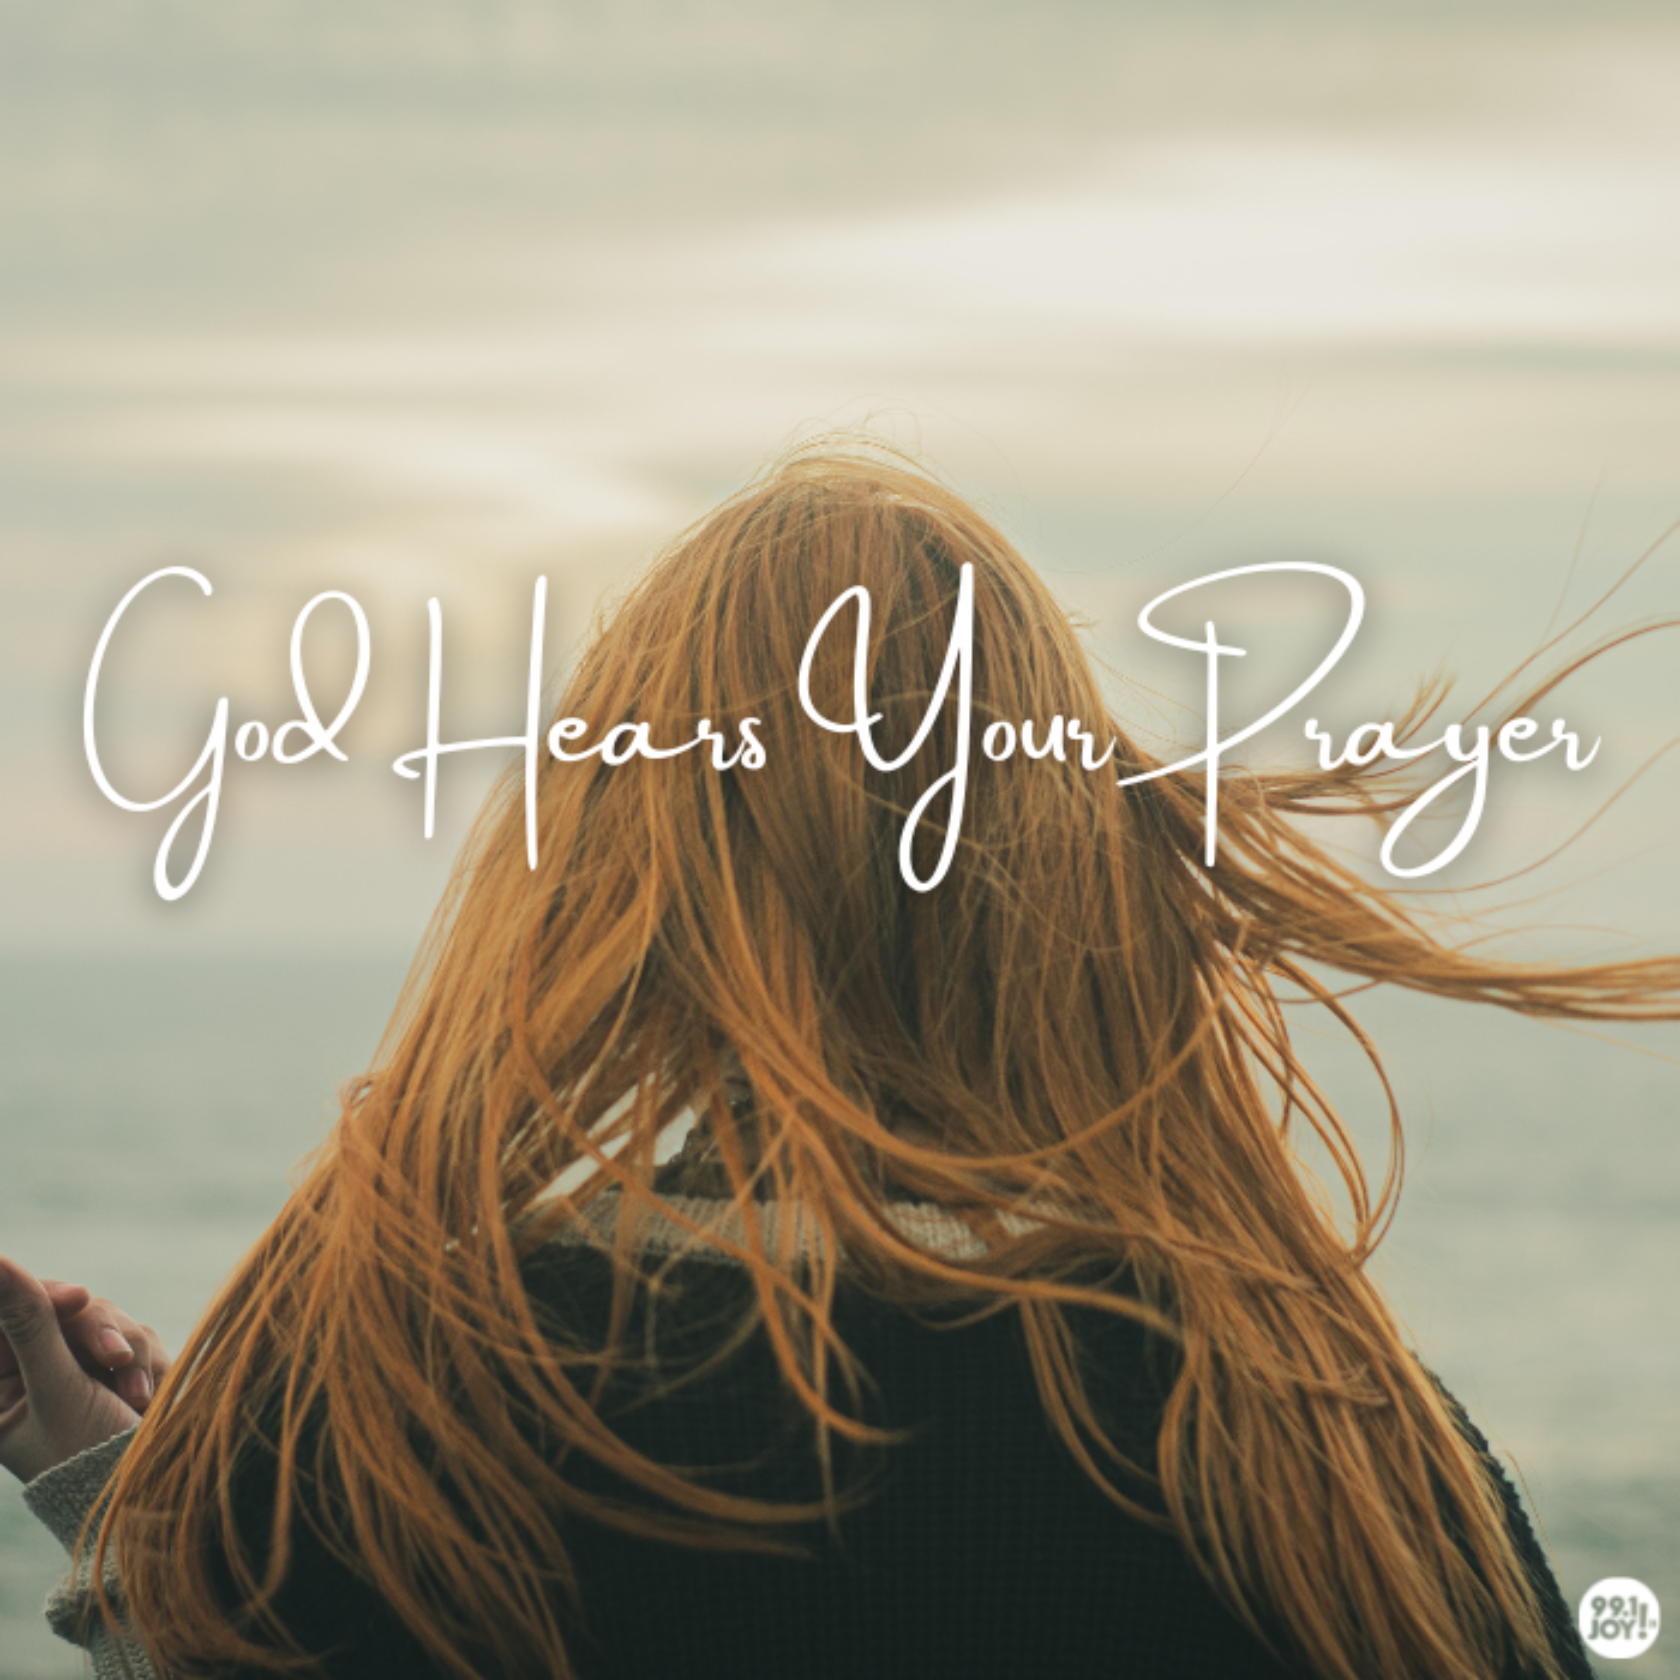 God Hears Your Prayer